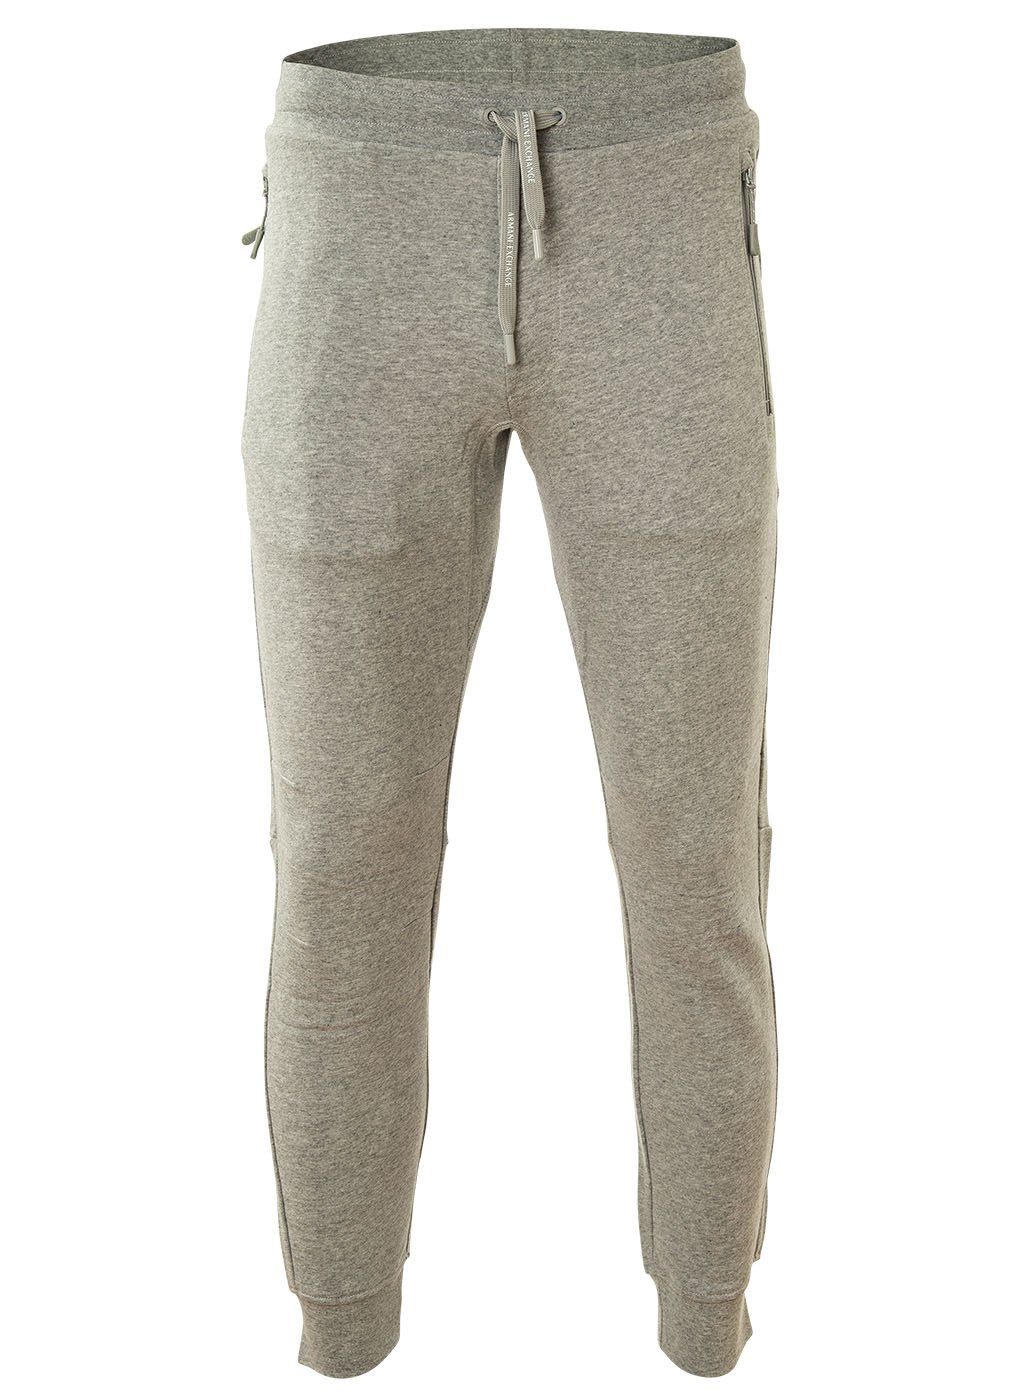 ARMANI EXCHANGE Jogginghose Herren Jogginghose - Loungewear Pants, lang Grau